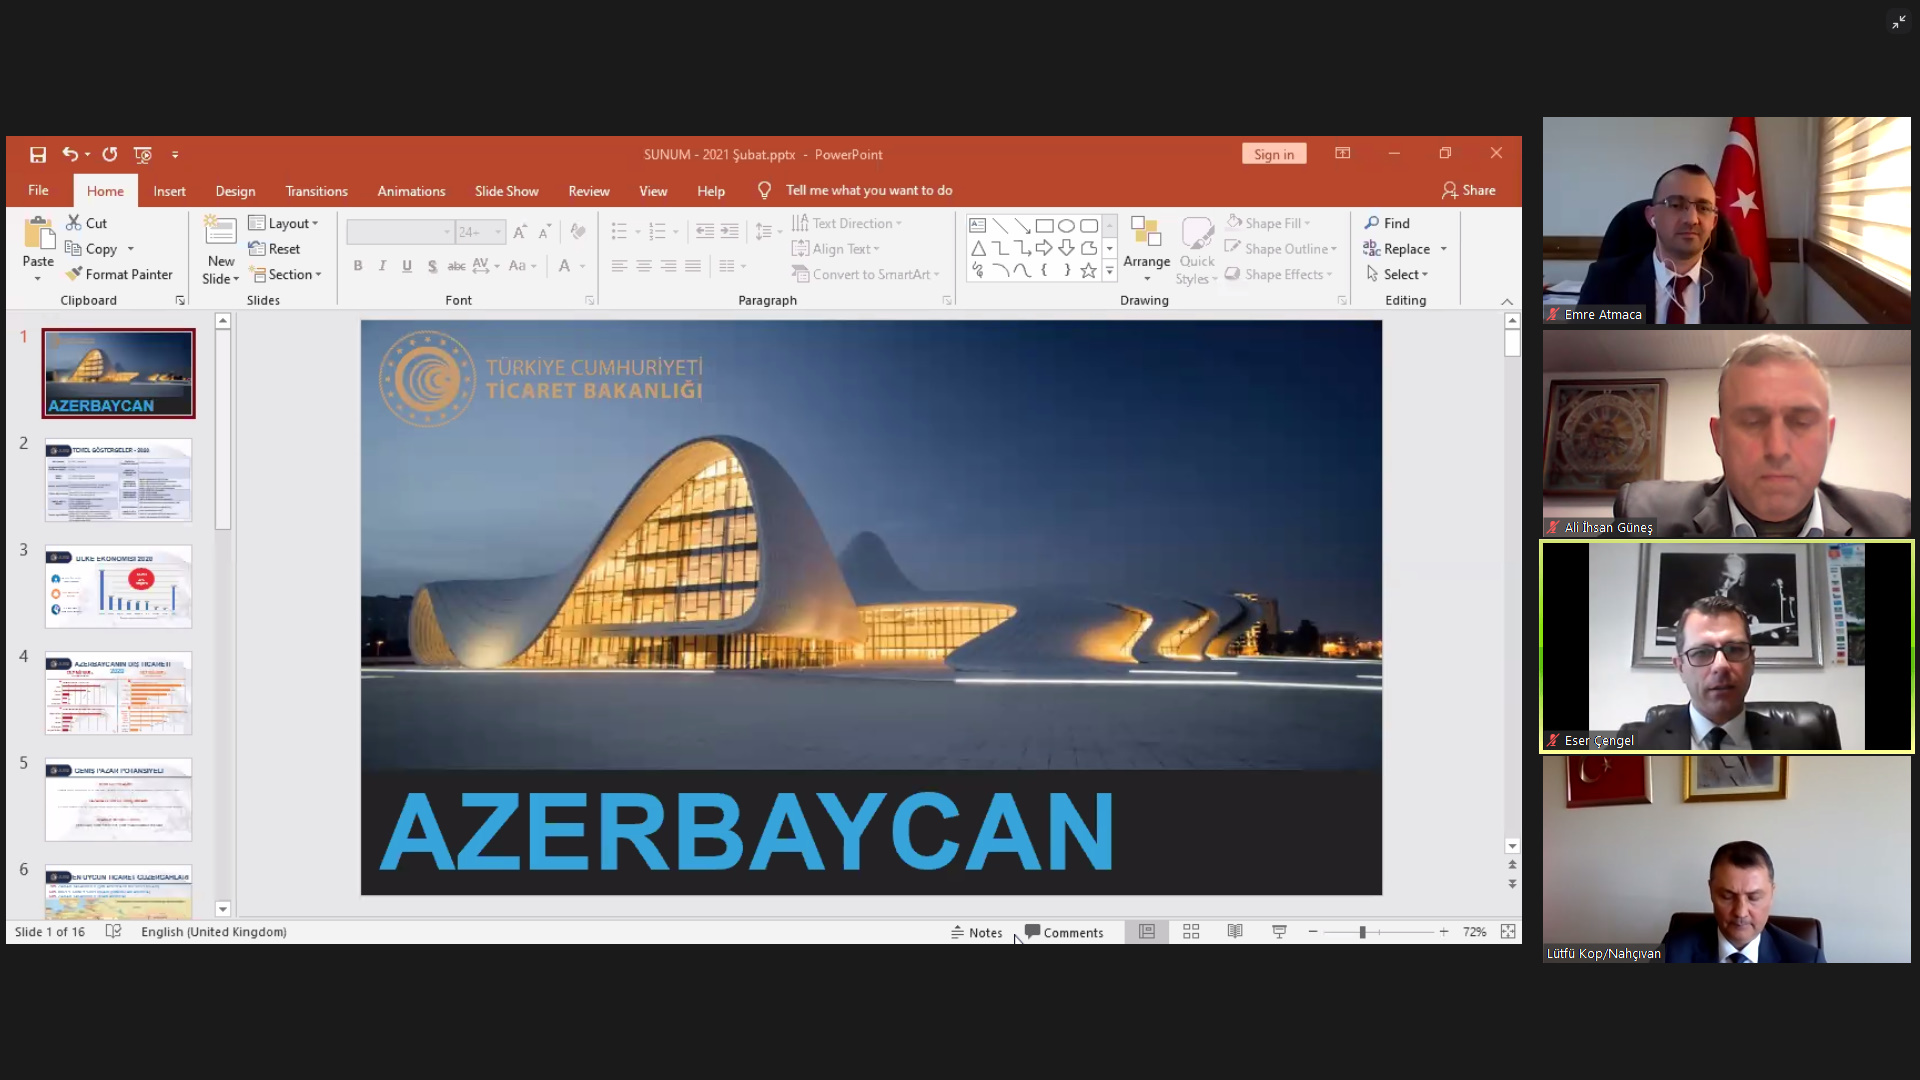 Azerbaycan Sakaryalı yatırımcıları bekliyor